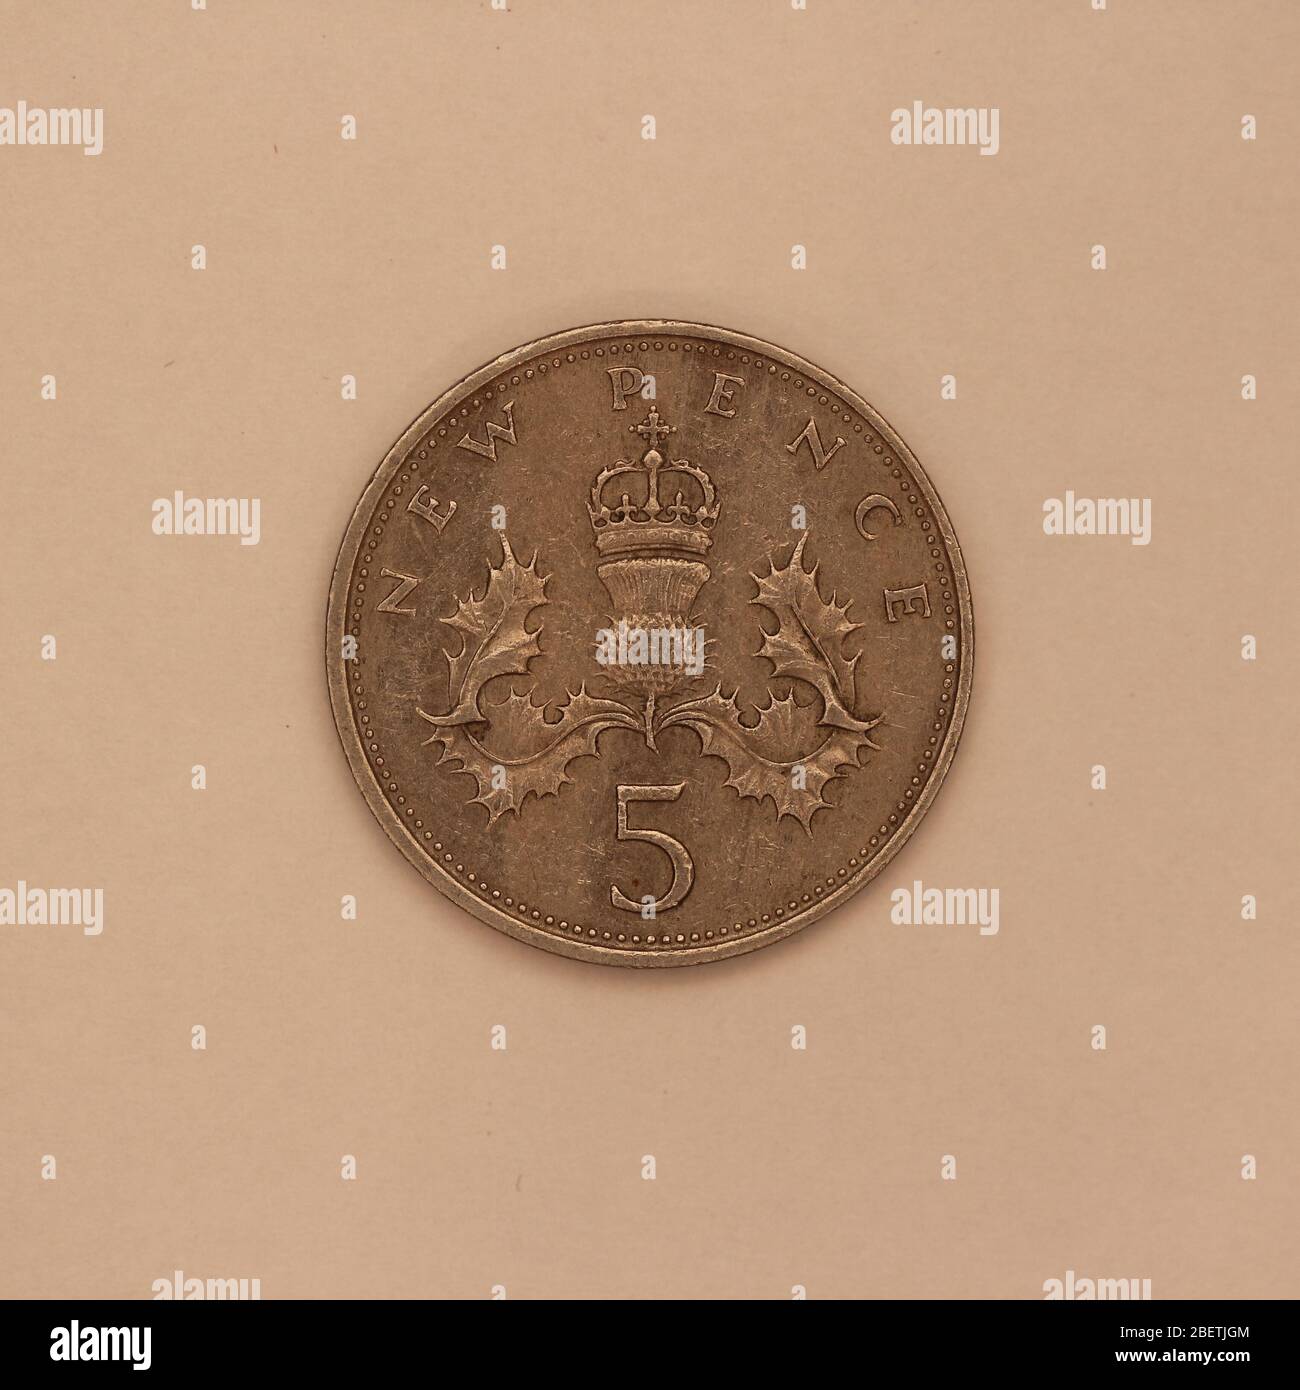 Großaufnahme einer Englischen 5 Pence Münze Stock Photo